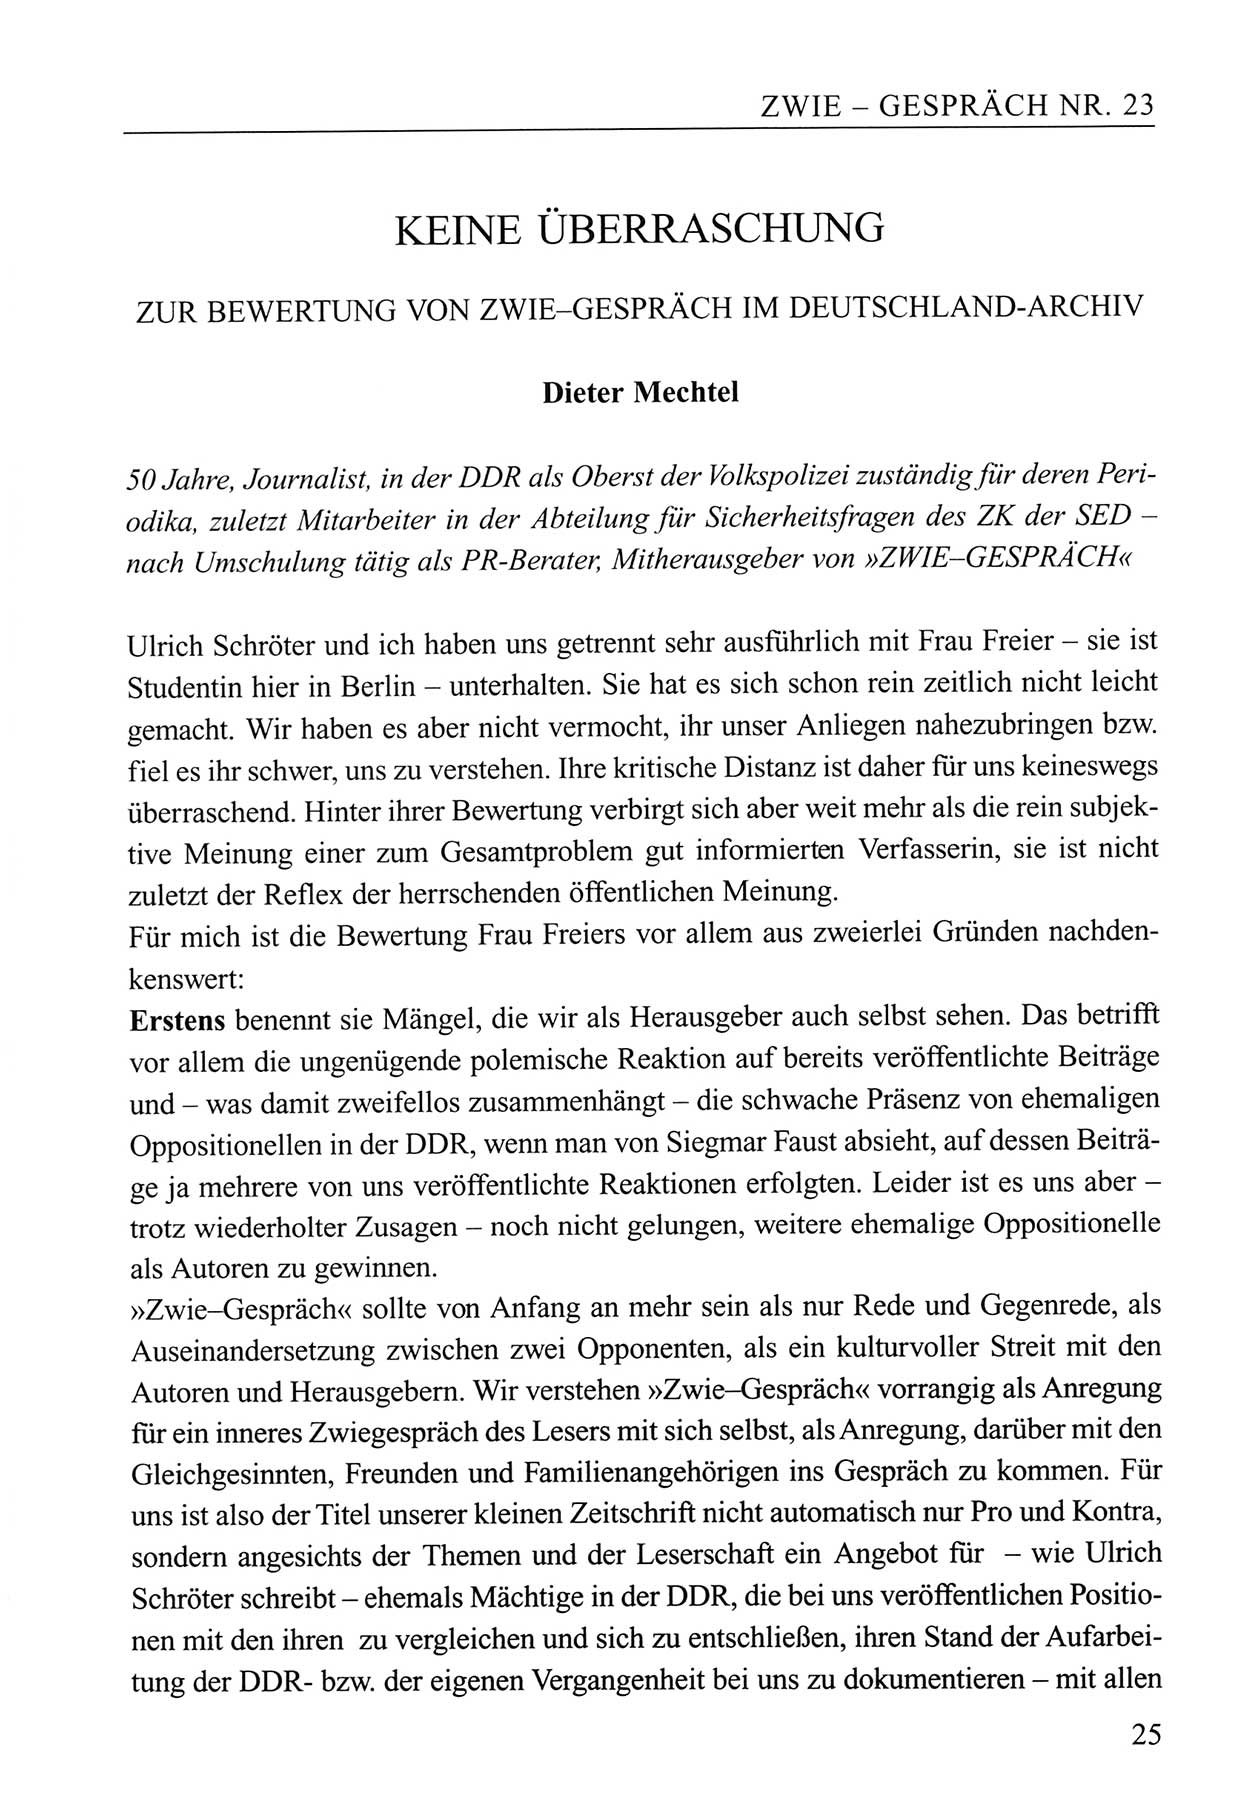 Zwie-Gespräch, Beiträge zum Umgang mit der Staatssicherheits-Vergangenheit [Deutsche Demokratische Republik (DDR)], Ausgabe Nr. 23, Berlin 1994, Seite 25 (Zwie-Gespr. Ausg. 23 1994, S. 25)